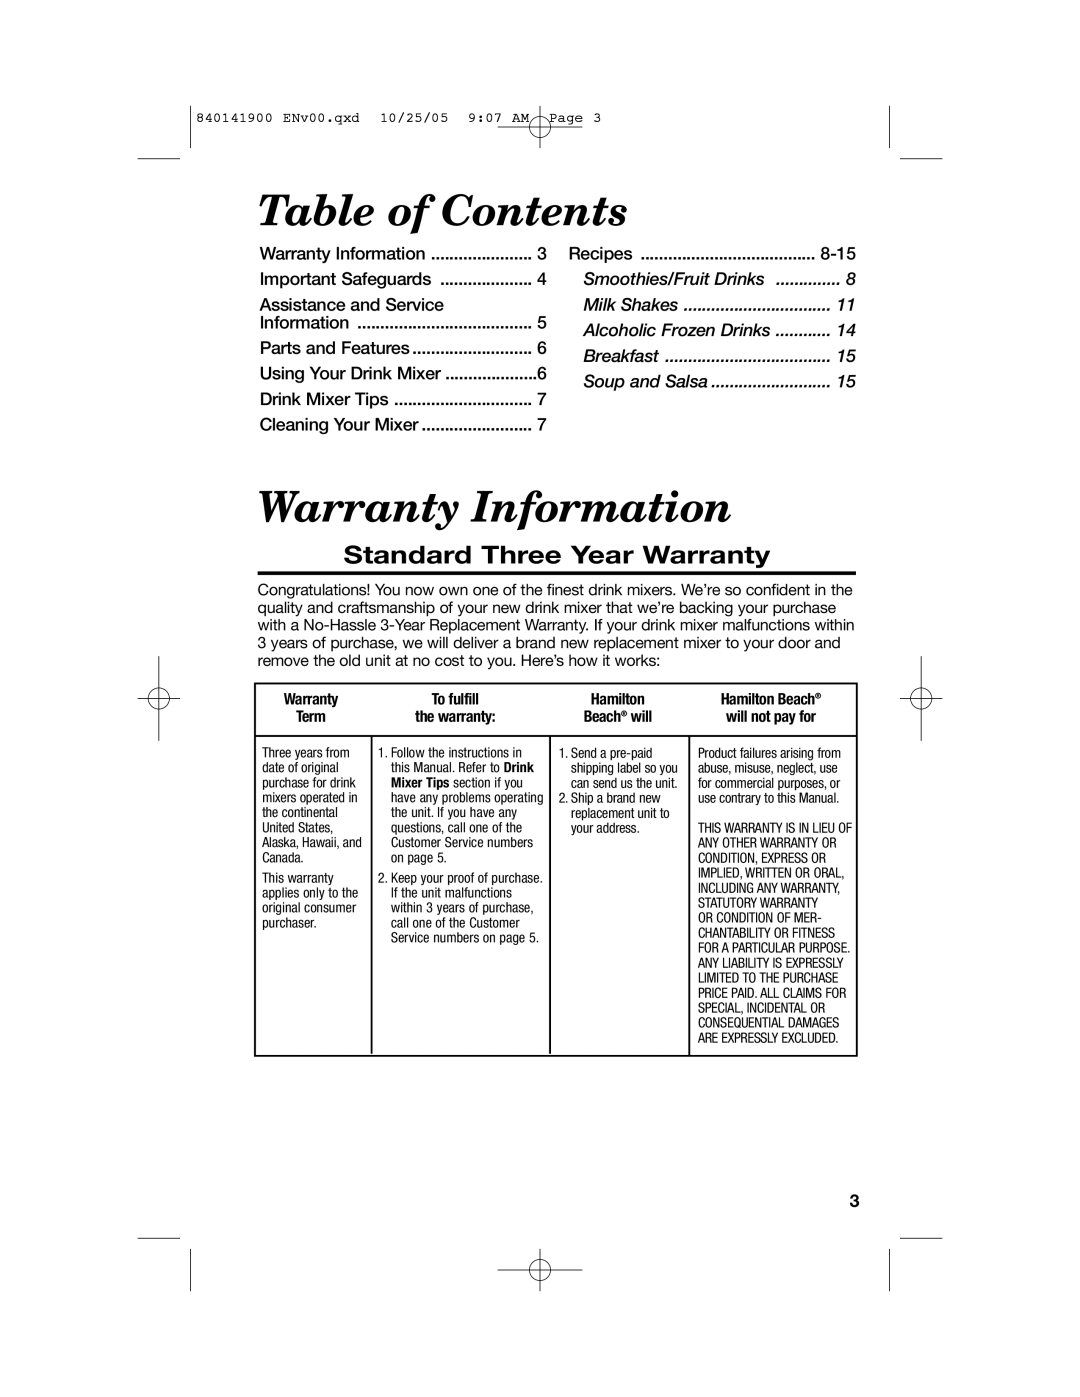 Hamilton Beach 840141900 Table of Contents, Warranty Information, Standard Three Year Warranty, Recipes, Milk Shakes, Term 